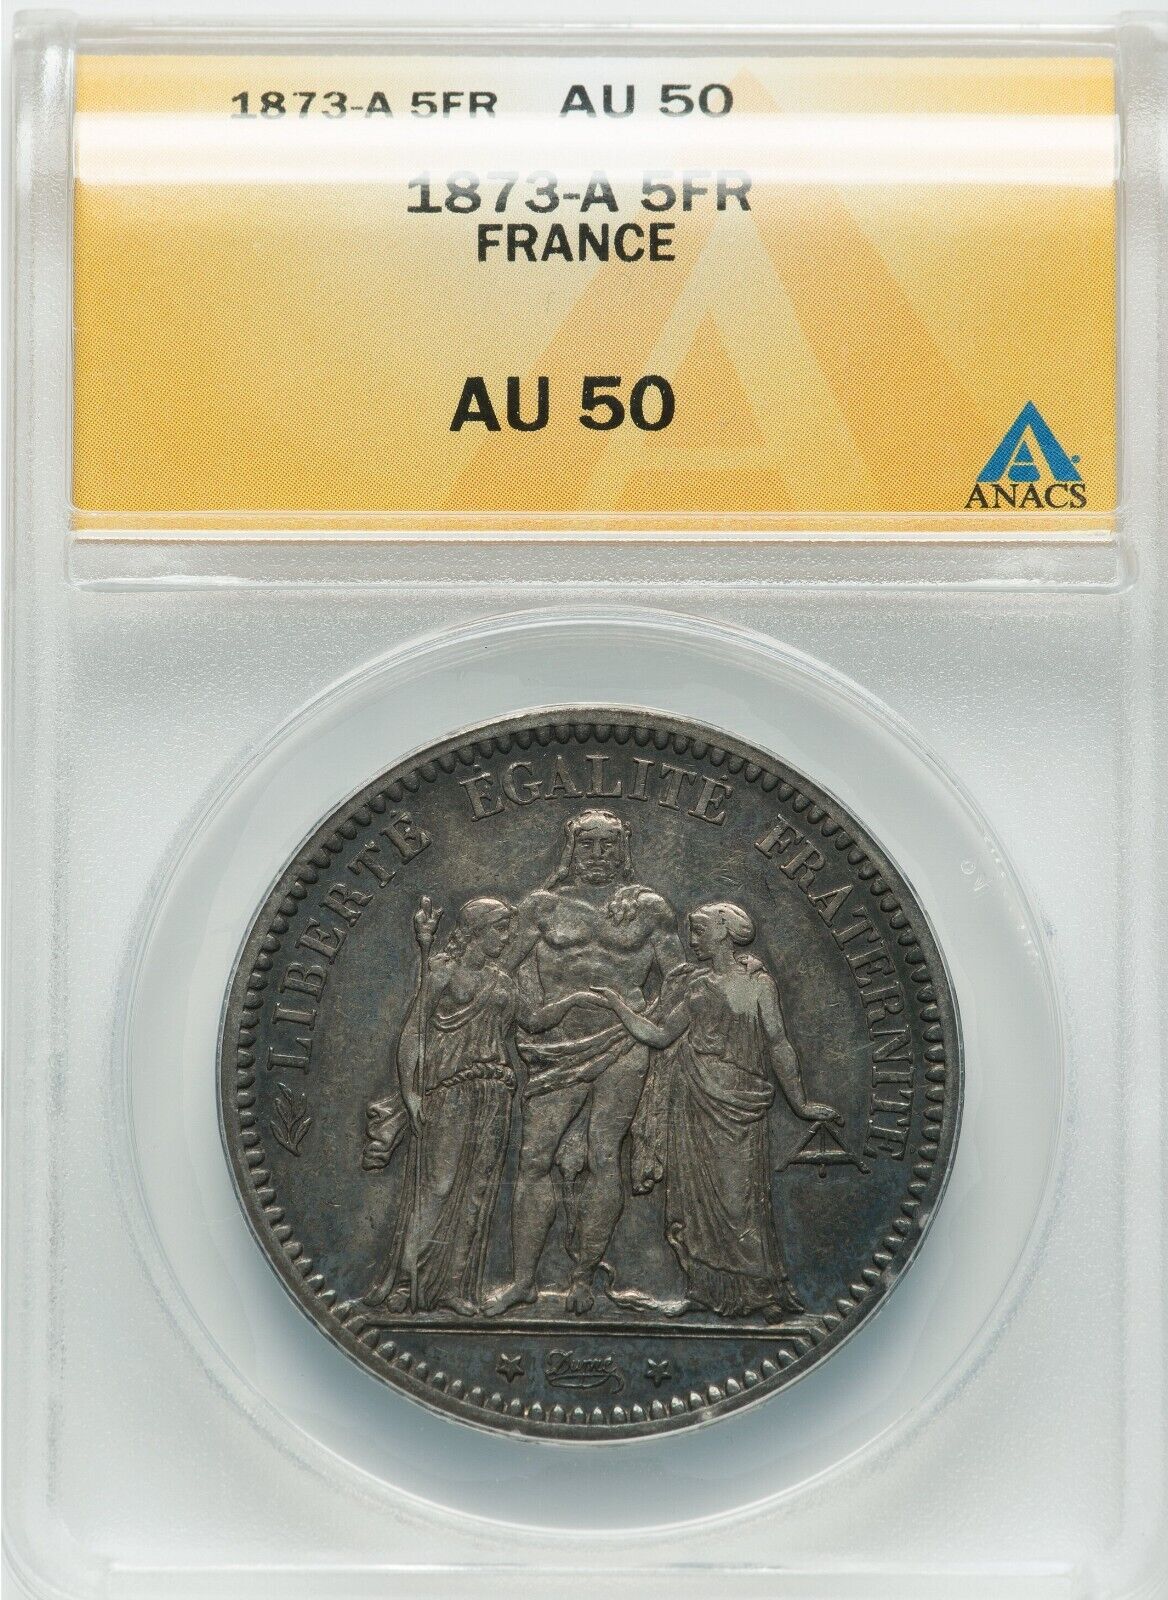 France 1873-A 5 Francs - Paris Mint - ANACS AU 50 - BEAUTIFUL TONE